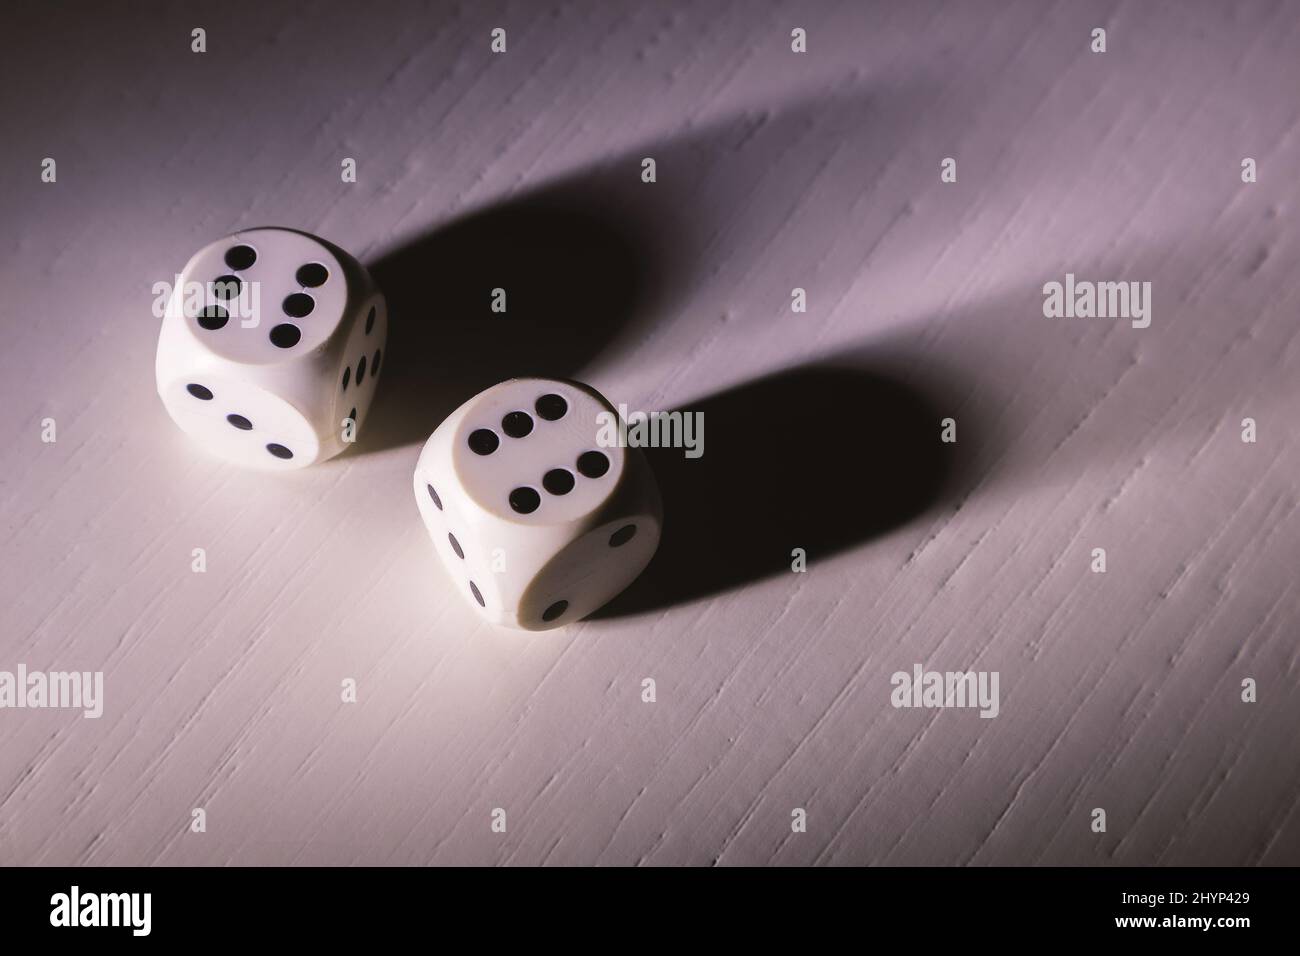 Dettagli dei cubi da gioco su un tavolo di legno bianco, illuminati da parte, dettagli d'ombra dura. Foto Stock